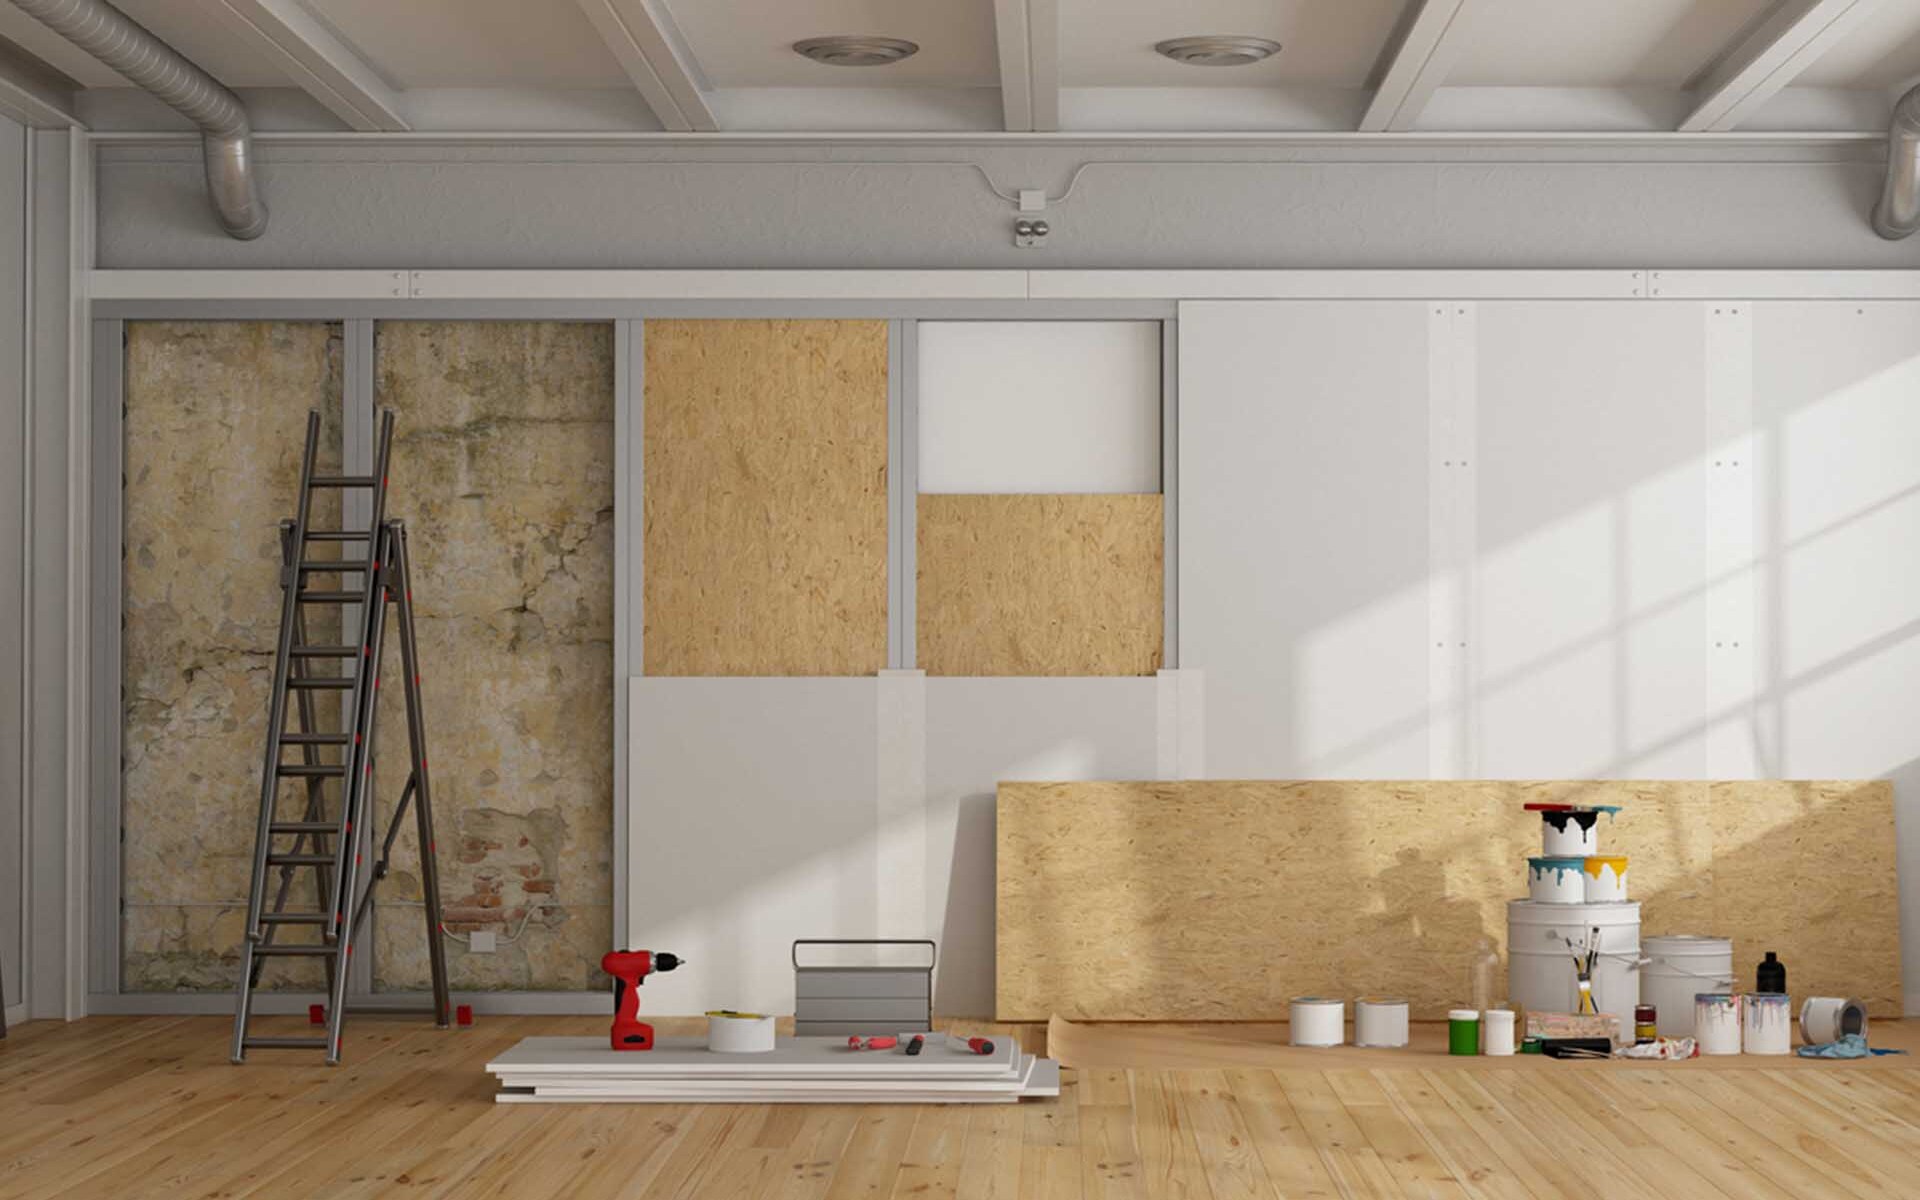 isolation des murs ameliorez le confort de votre maison et reduisez les pertes energetiques.jpeg